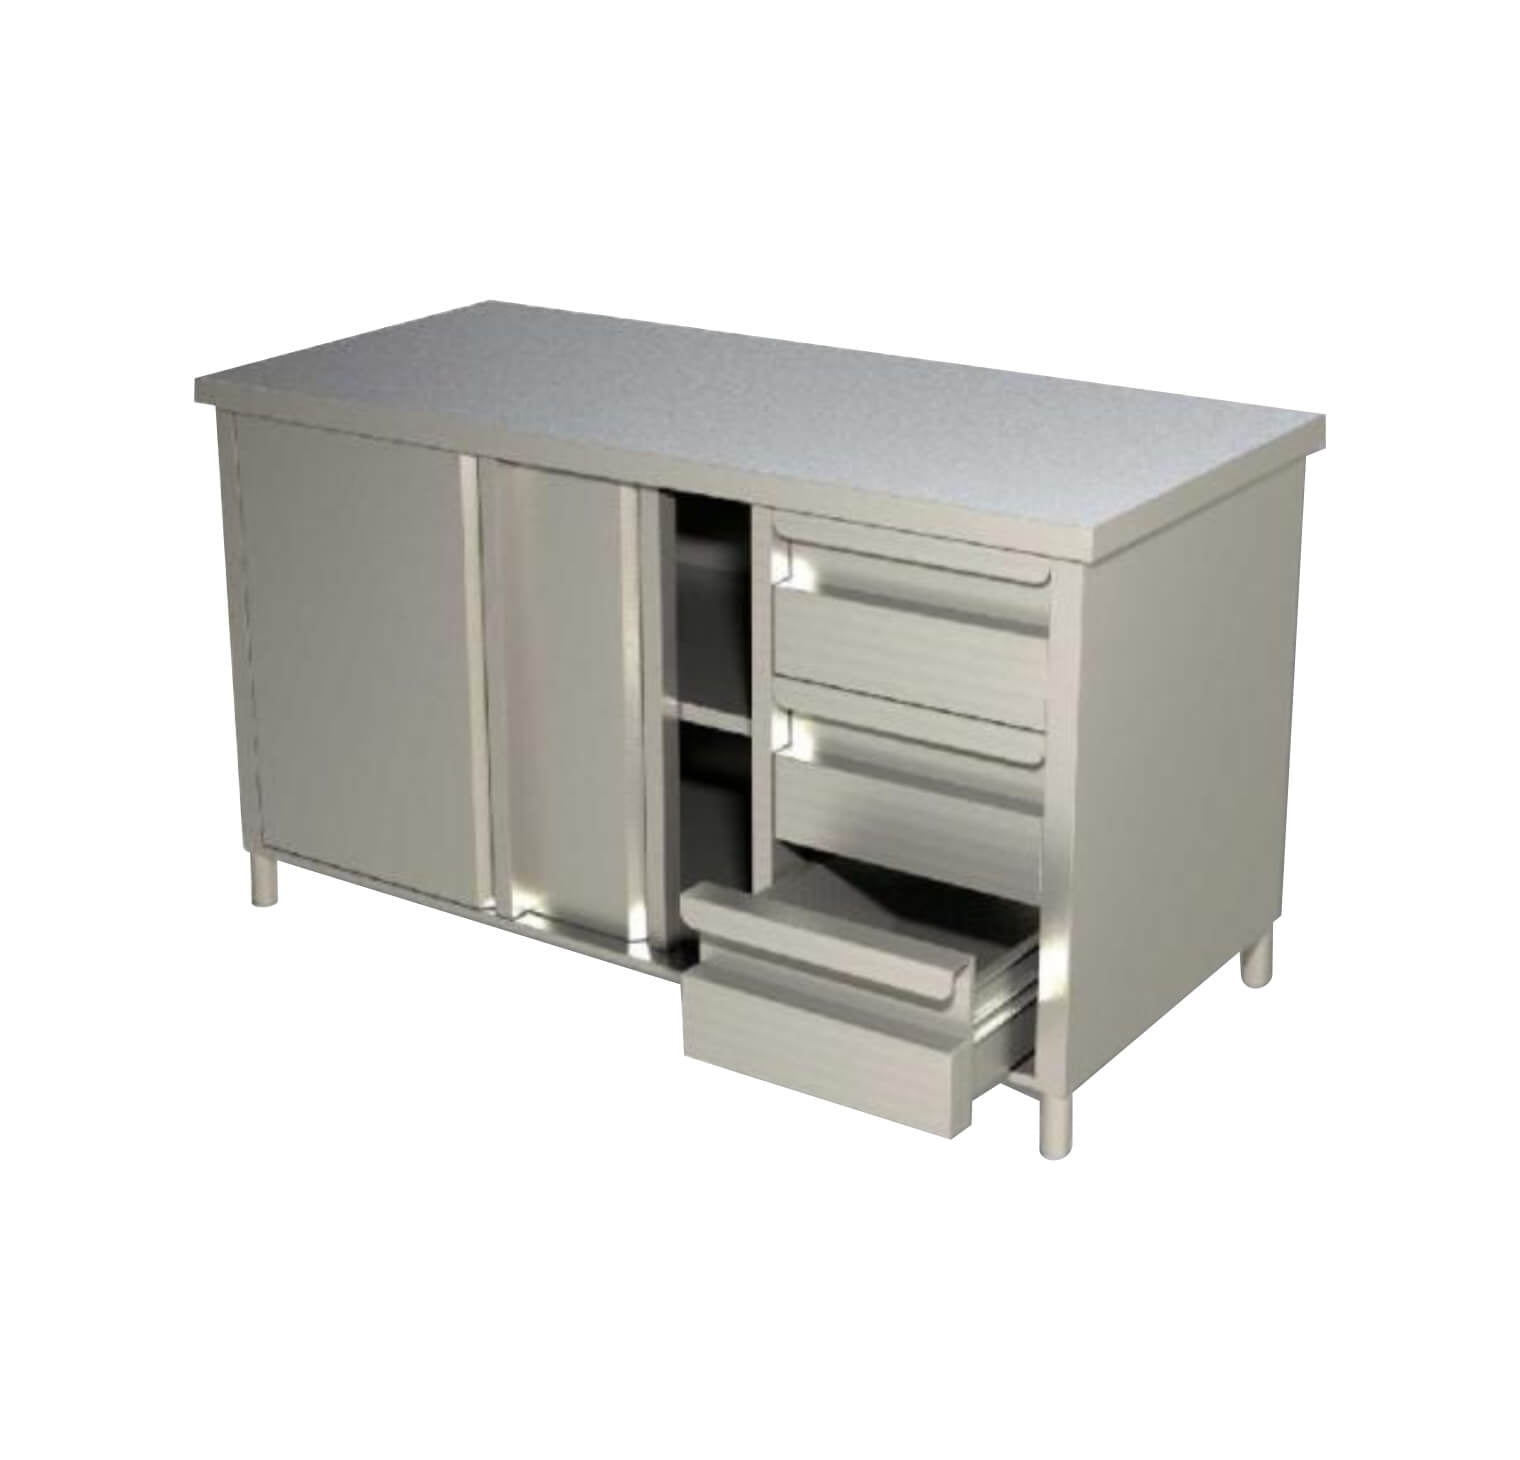 Base Cabinet | Trust Kitchen & Stainless Steel Restaurant Equipment ...